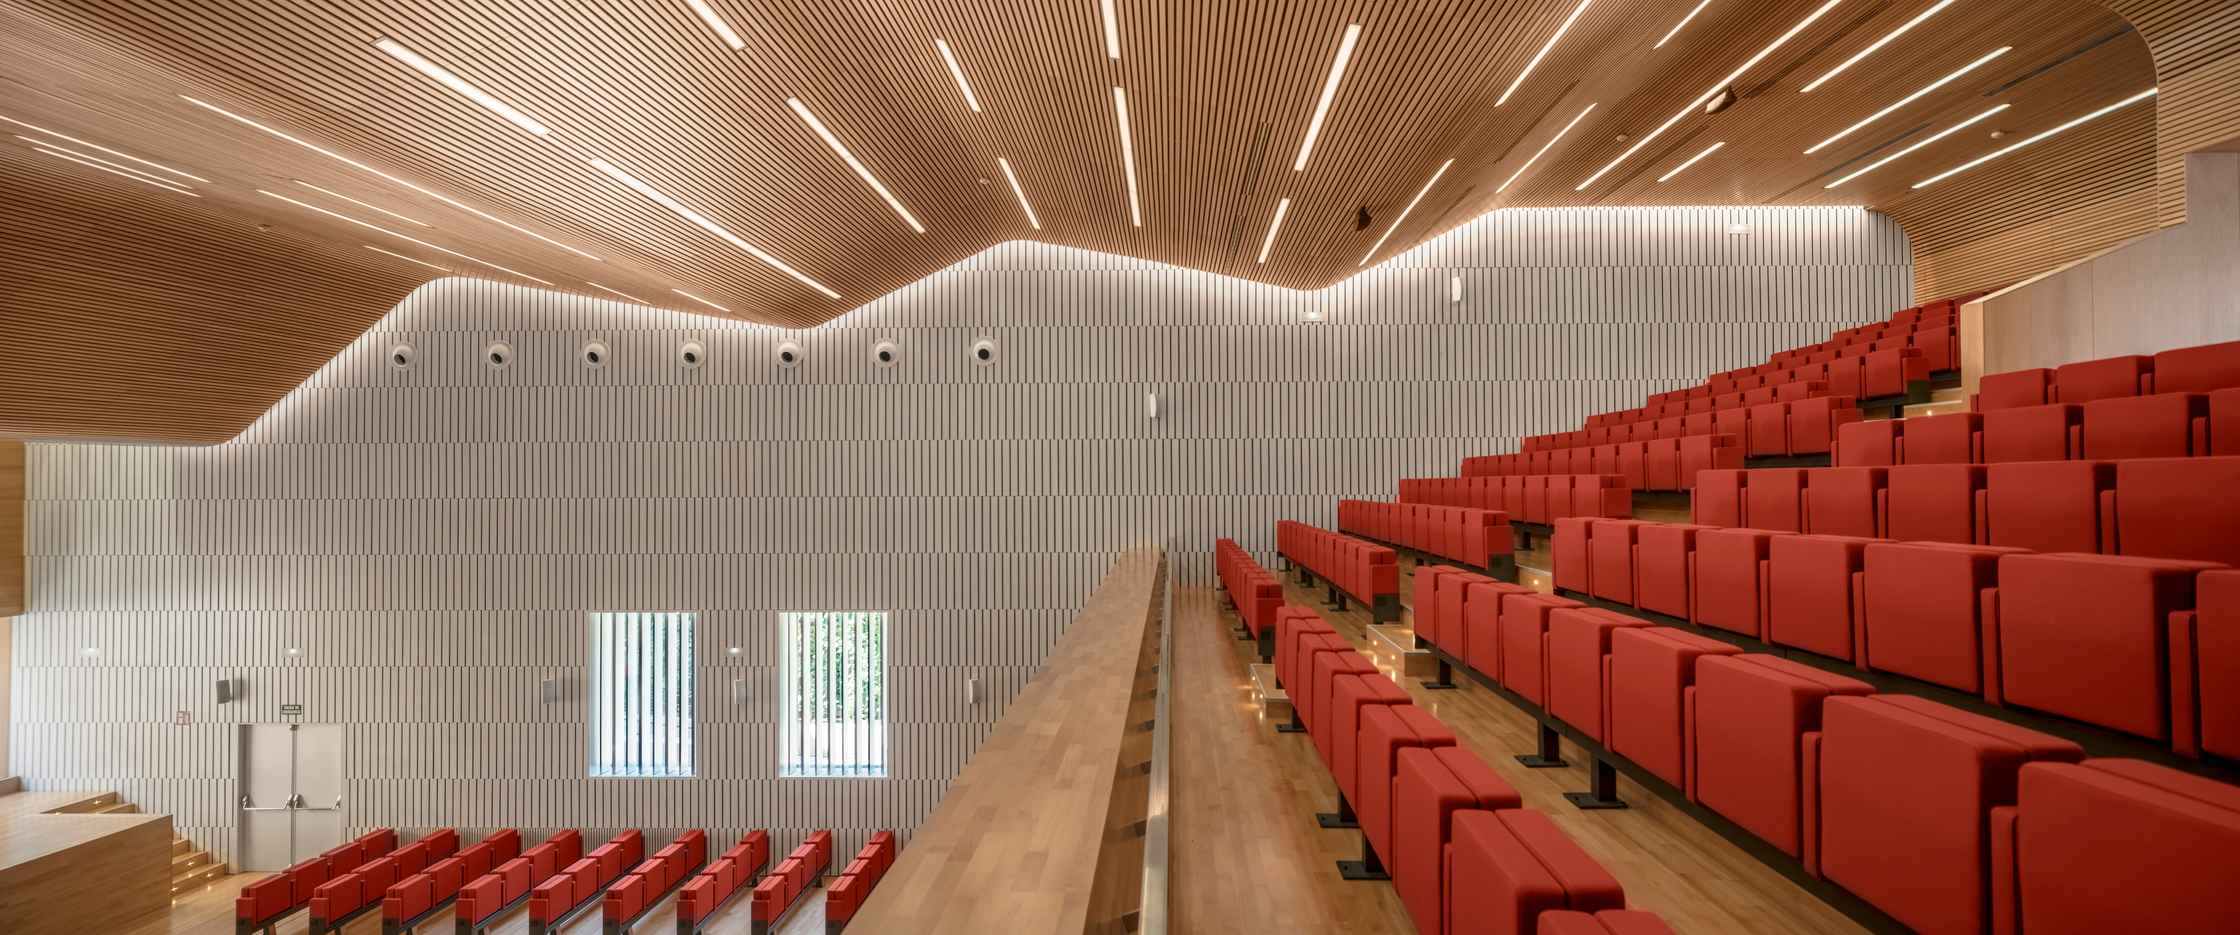 Auditorio del Palacio de Congresos, un espacio de arquitectura contemporánea en pleno corazón de la judería, junto a la Mezquita-Catedral de Córdoba (España). Proyecto: LAP arquitectos.